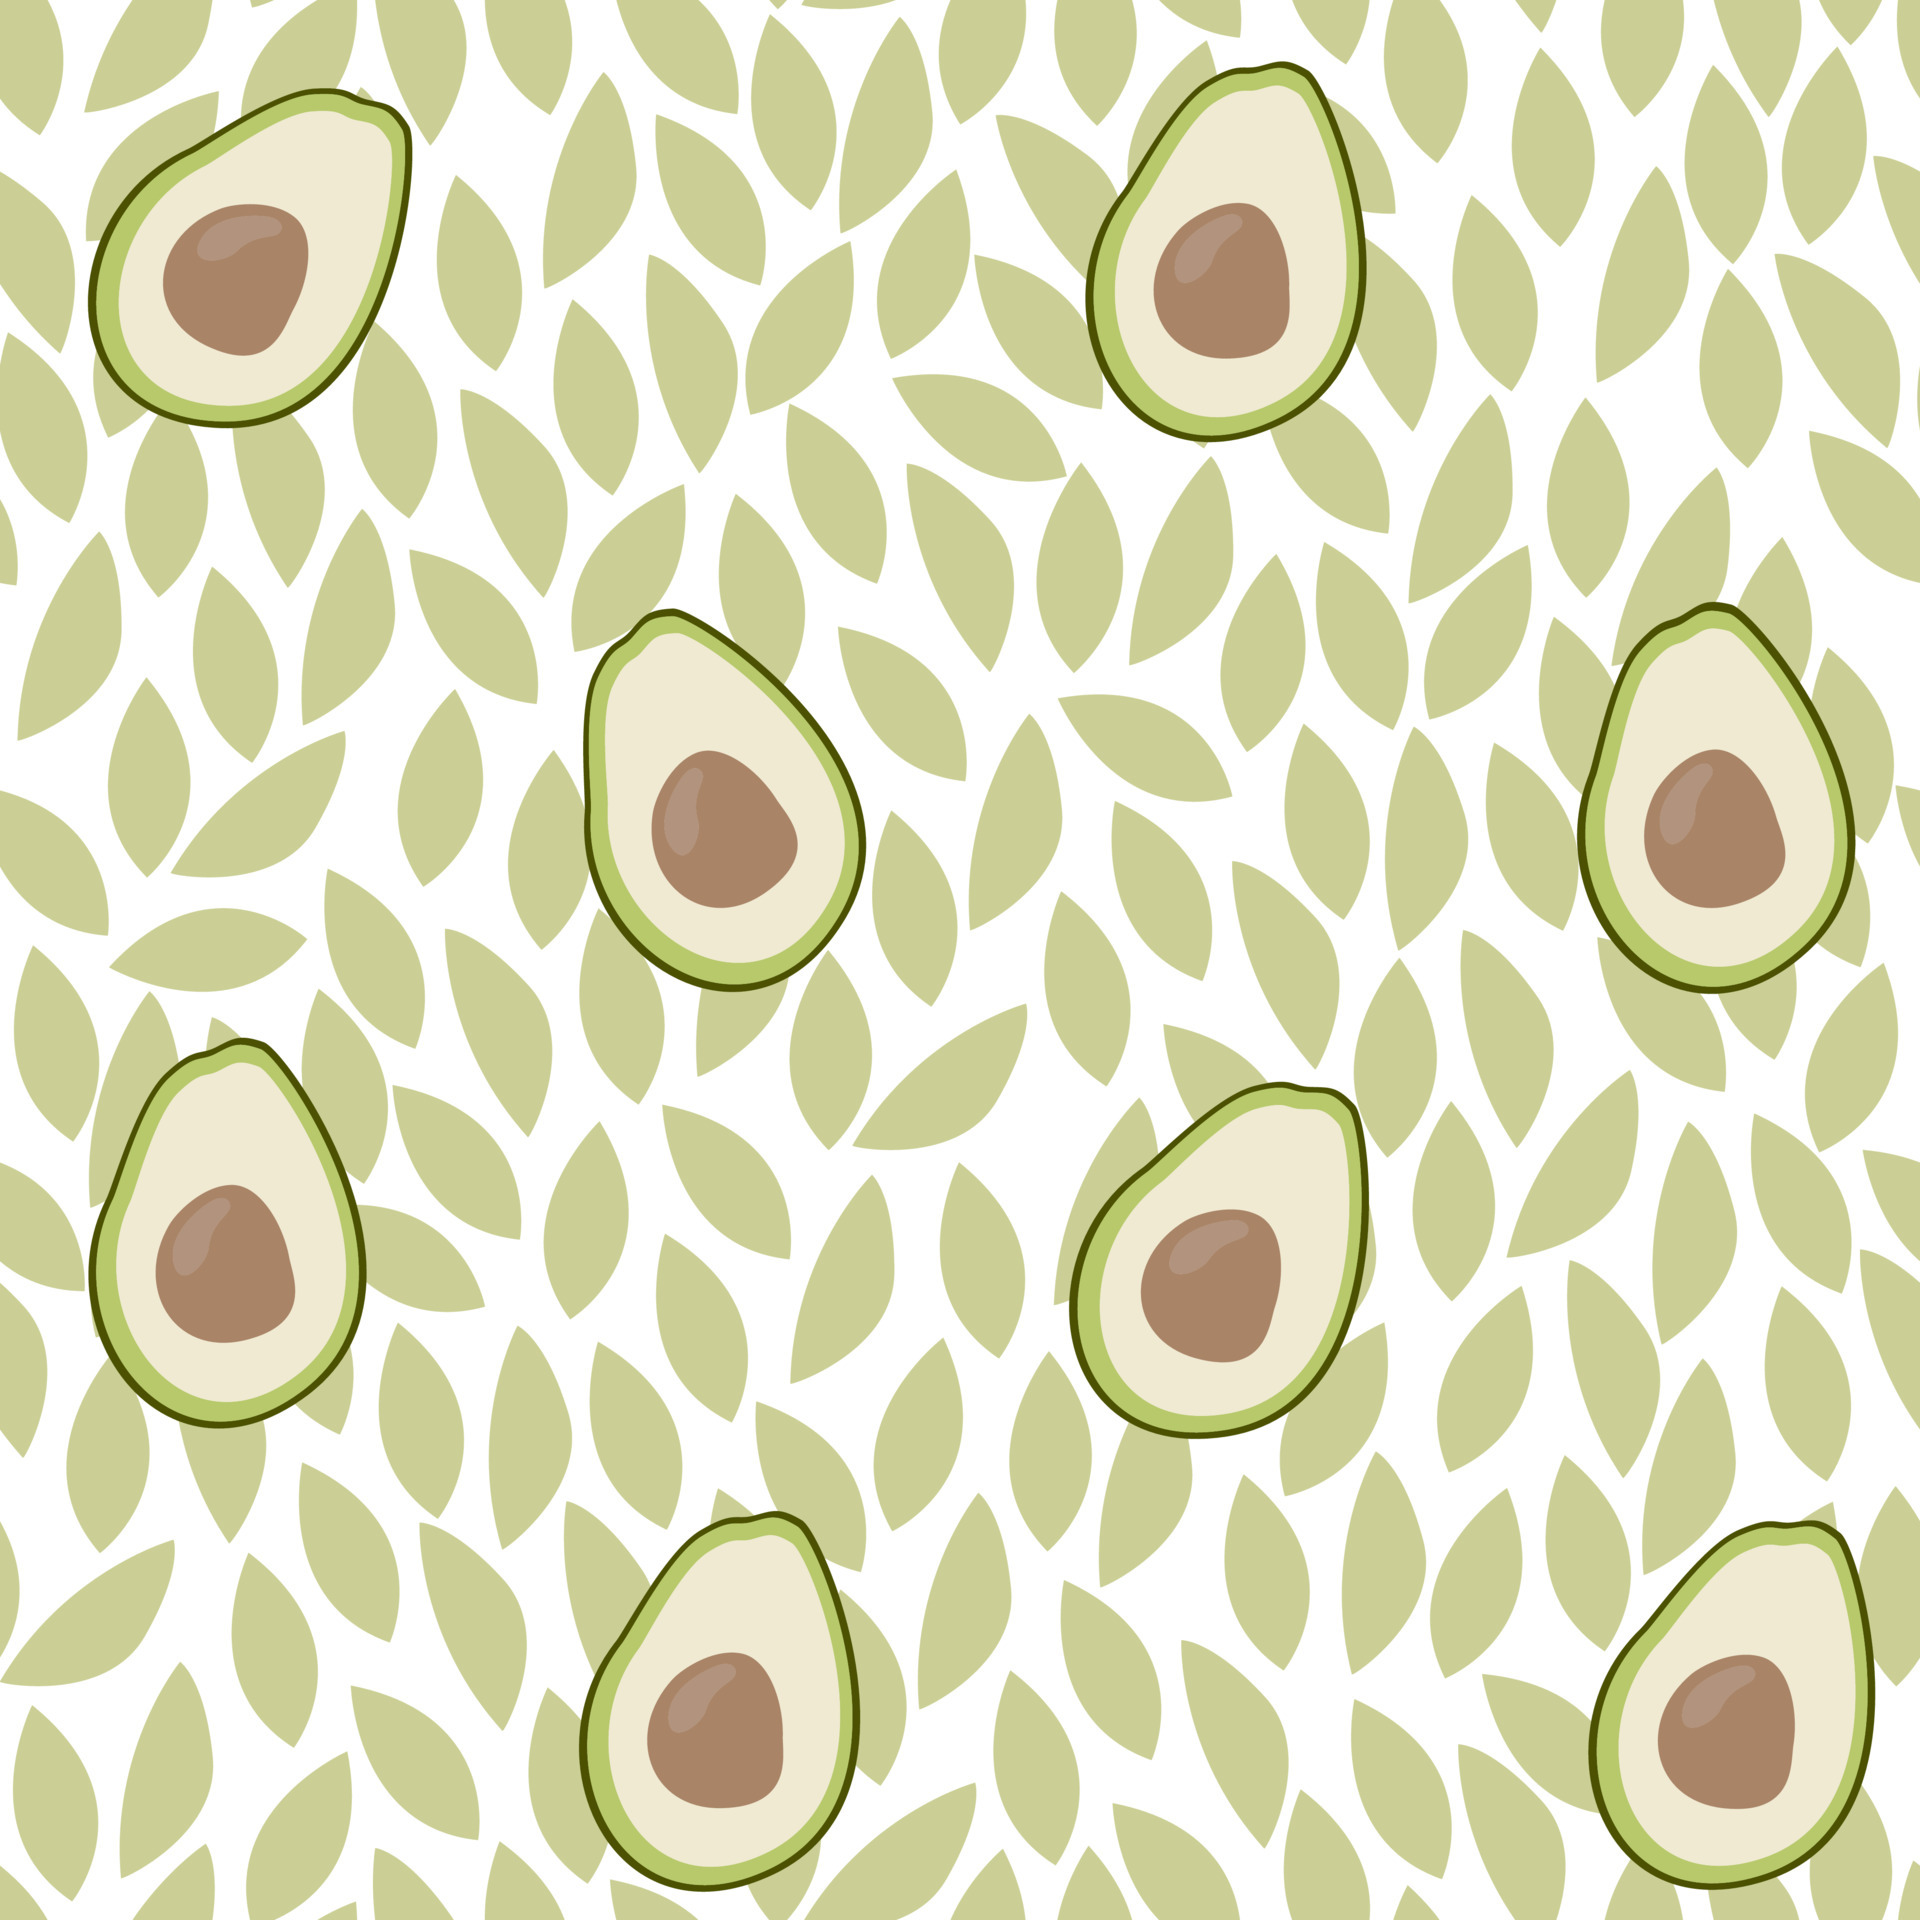 5000 Seamless Avocado Wallpaper Illustrations RoyaltyFree Vector  Graphics  Clip Art  iStock